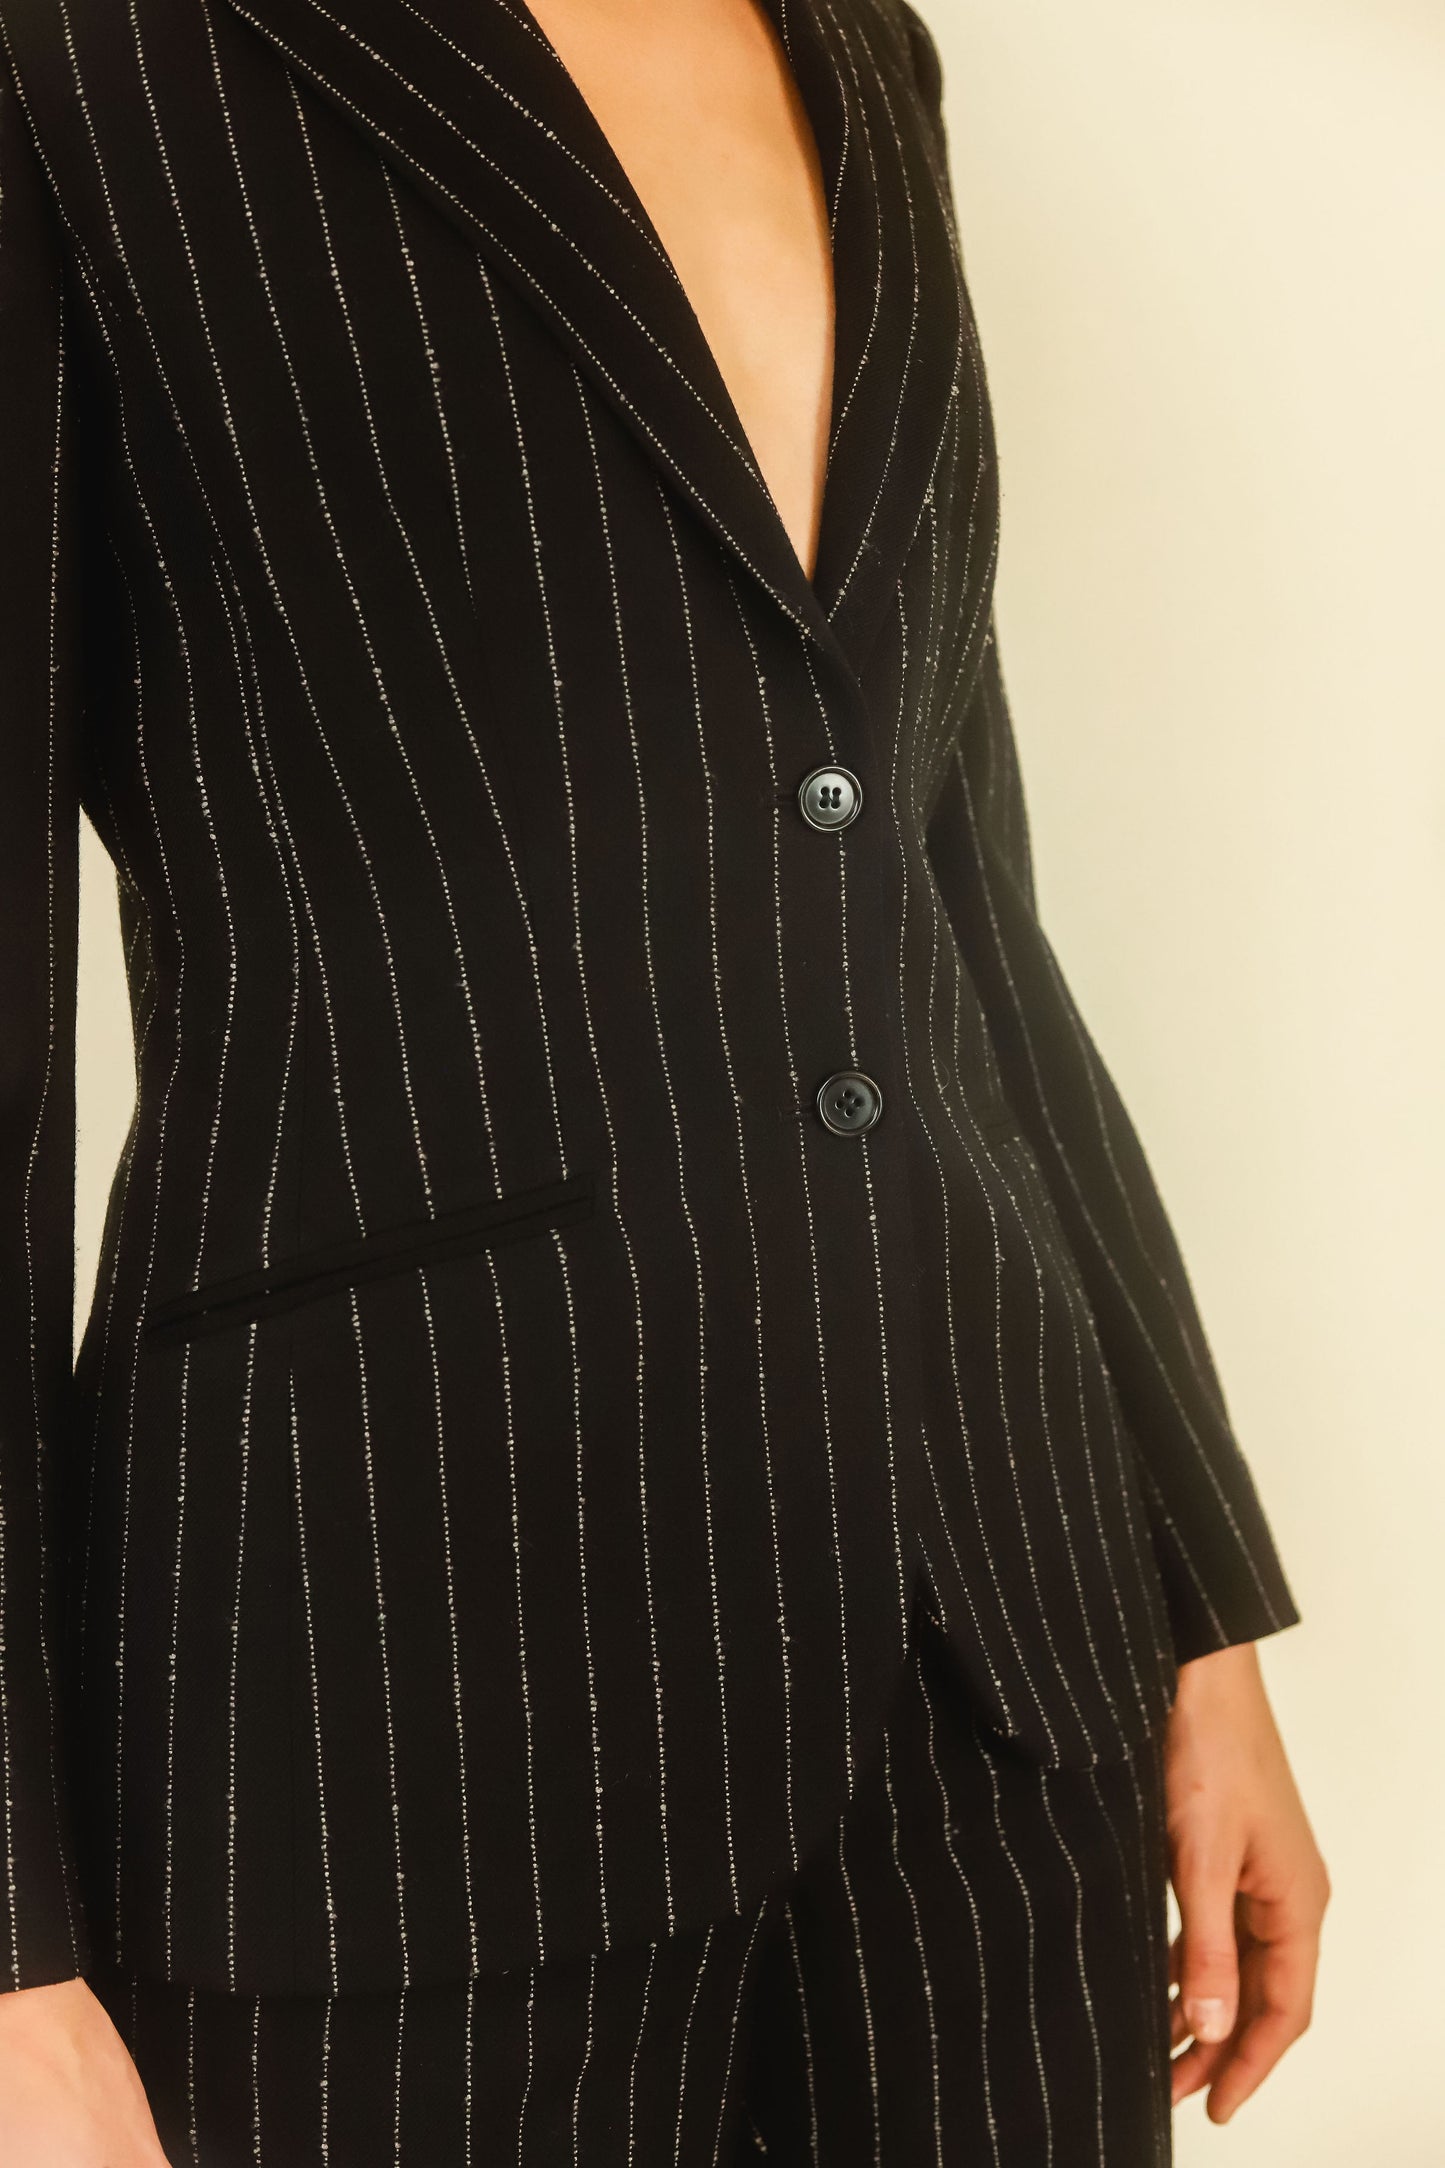 Alexander McQueen Pin Stripe Suit